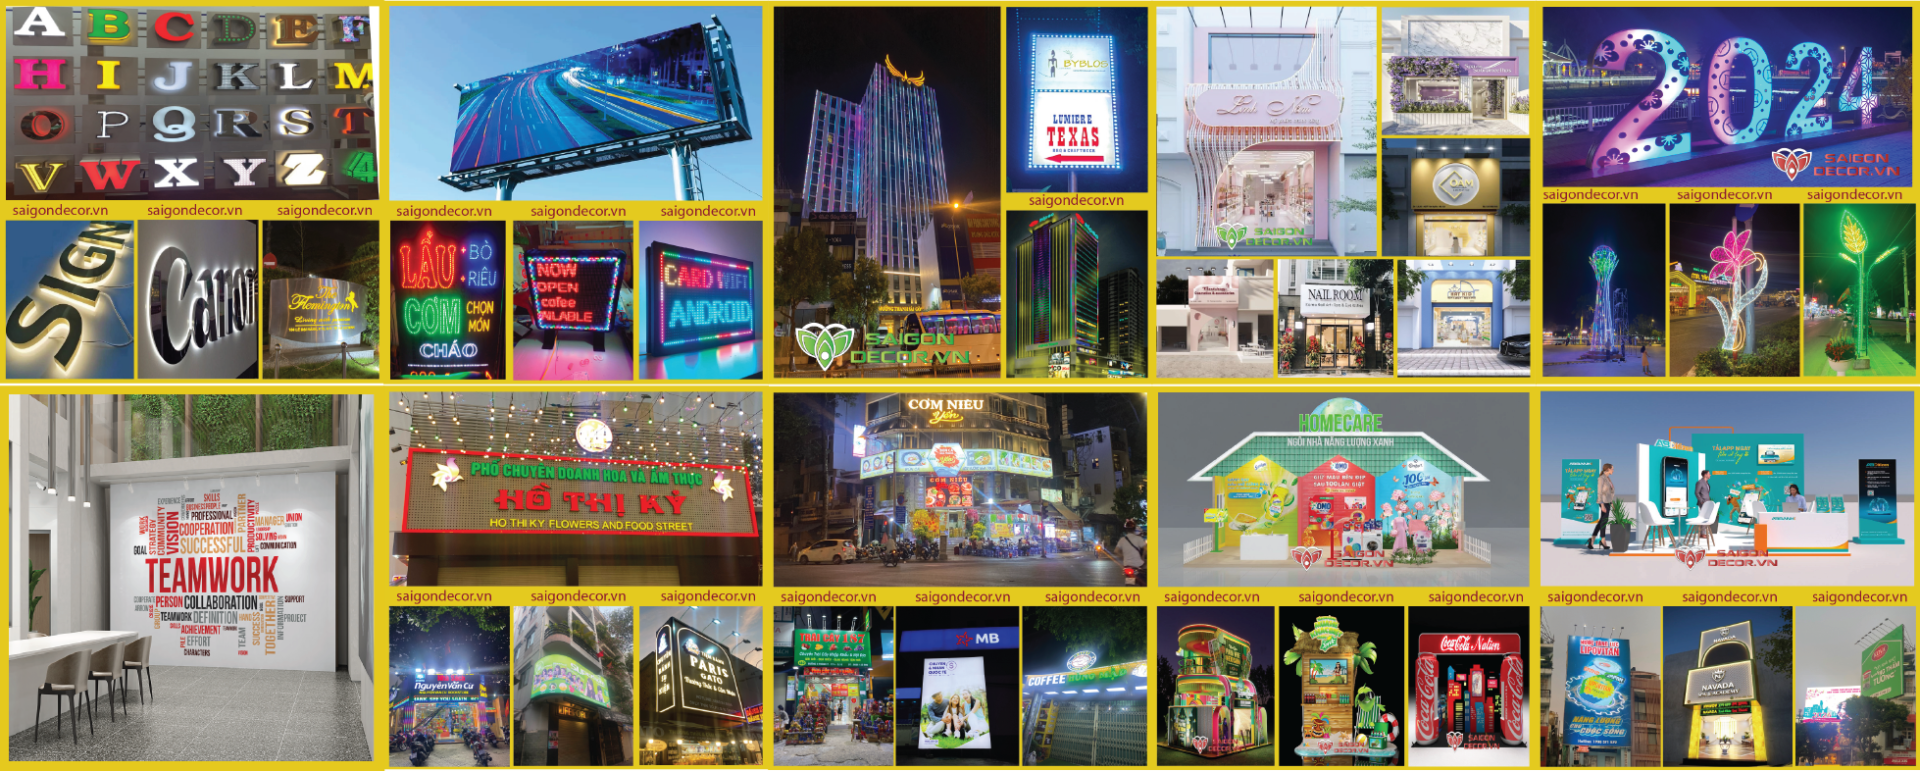 Saigon Decor thi công trang trí quảng cáo, tổ chức sự kiện, trang trí nội thất. Liên hệ: 0967253787